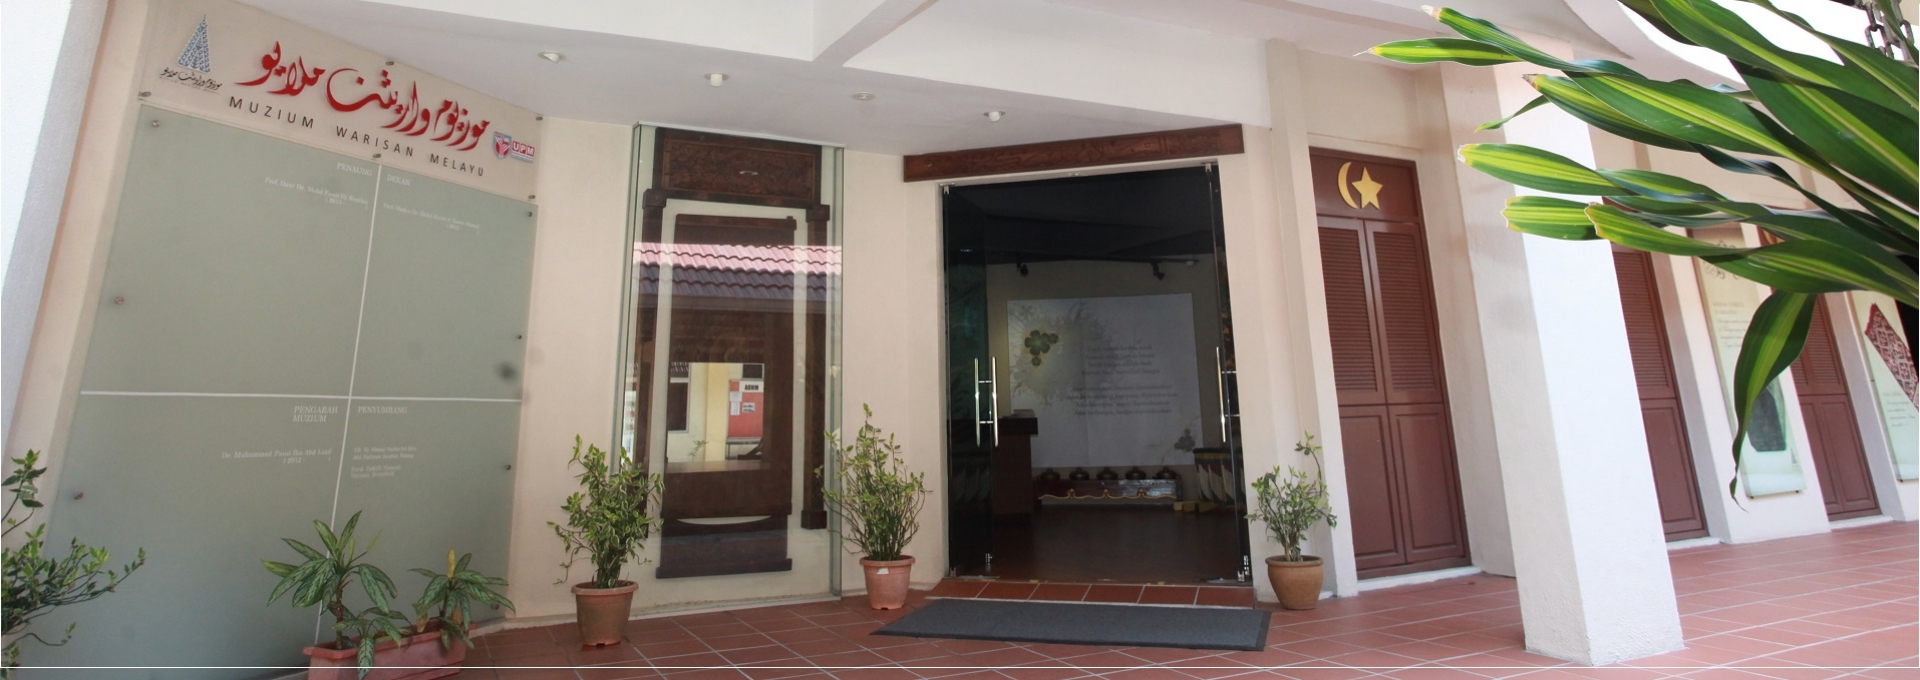 Pintu Masuk Muzium Warisan Melayu